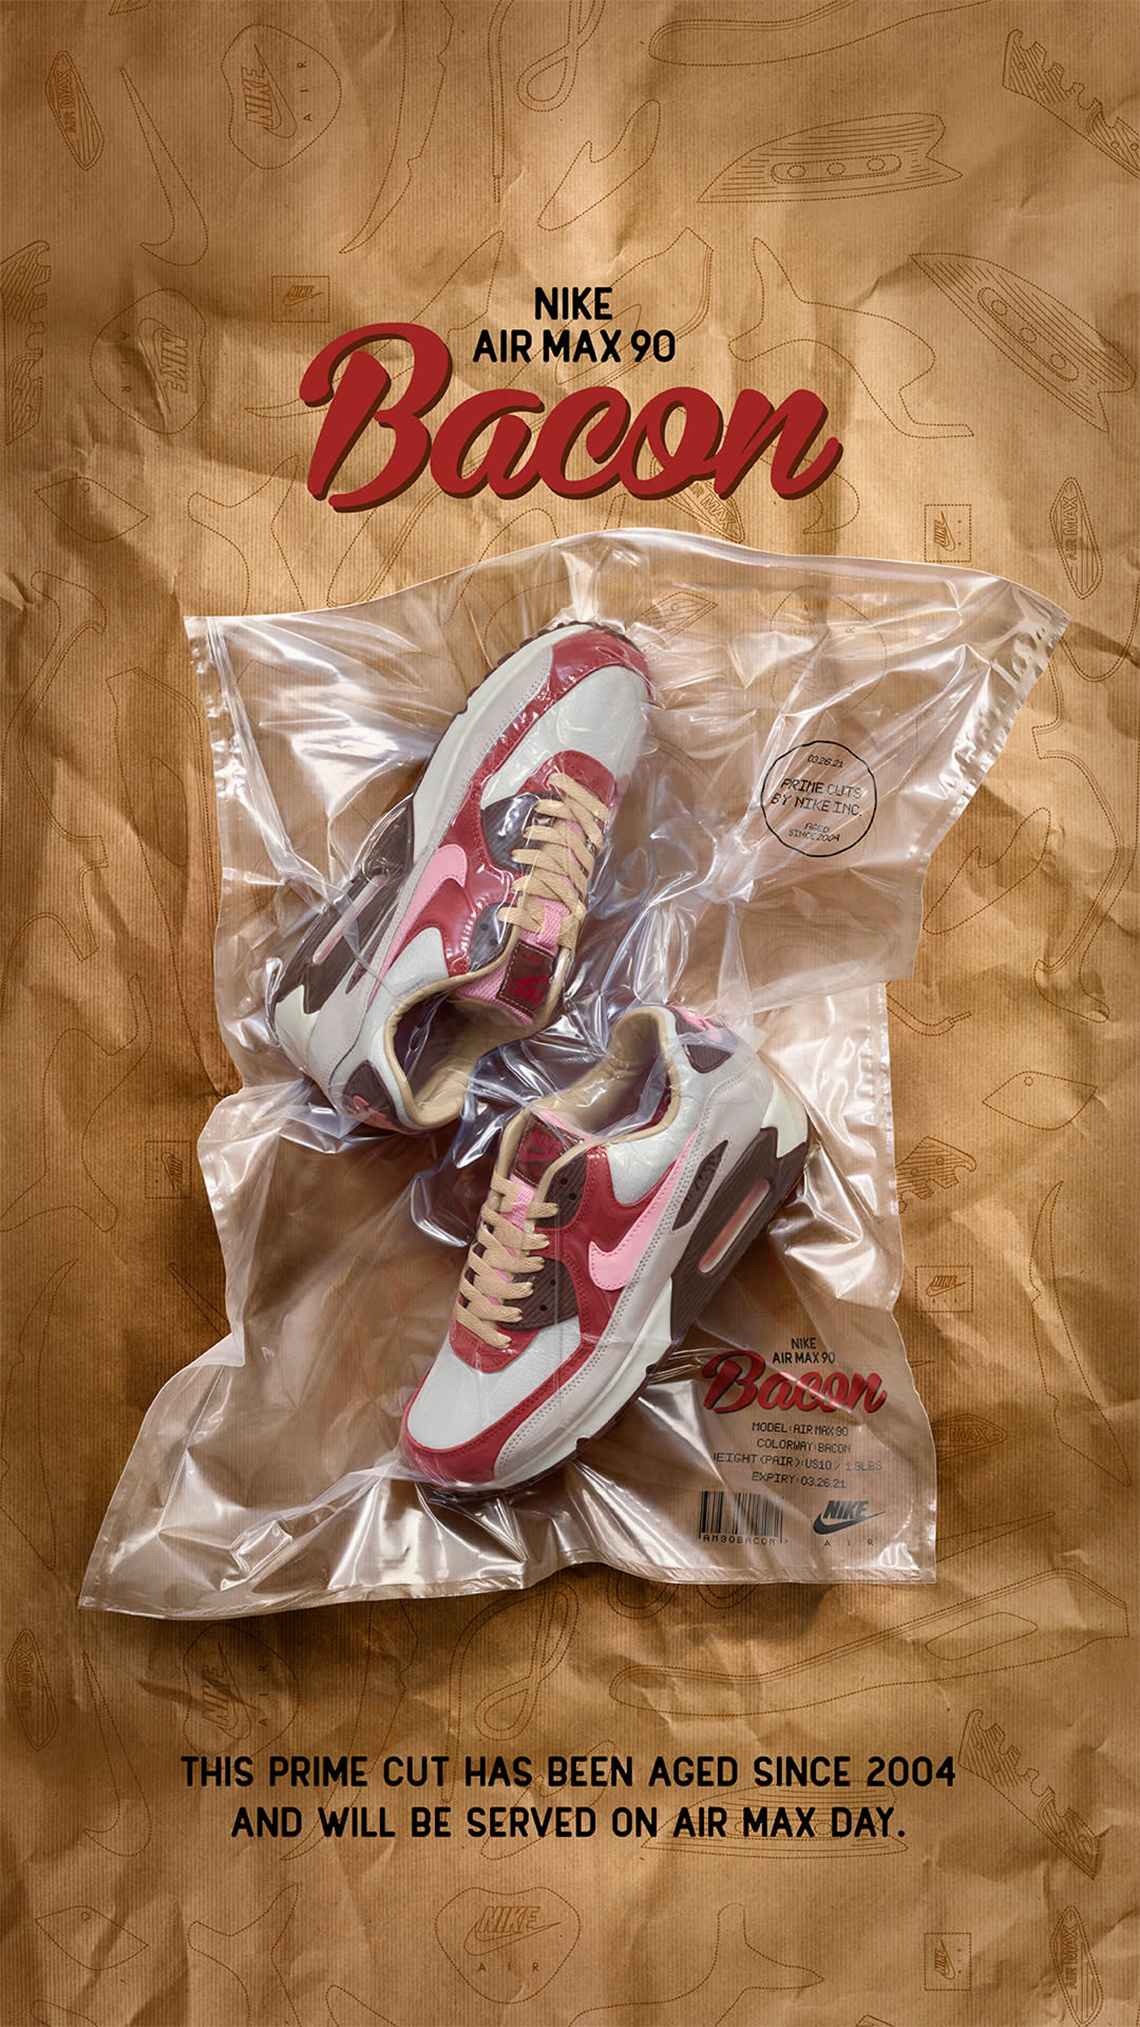 Nike Air Max 90 'Bacon'